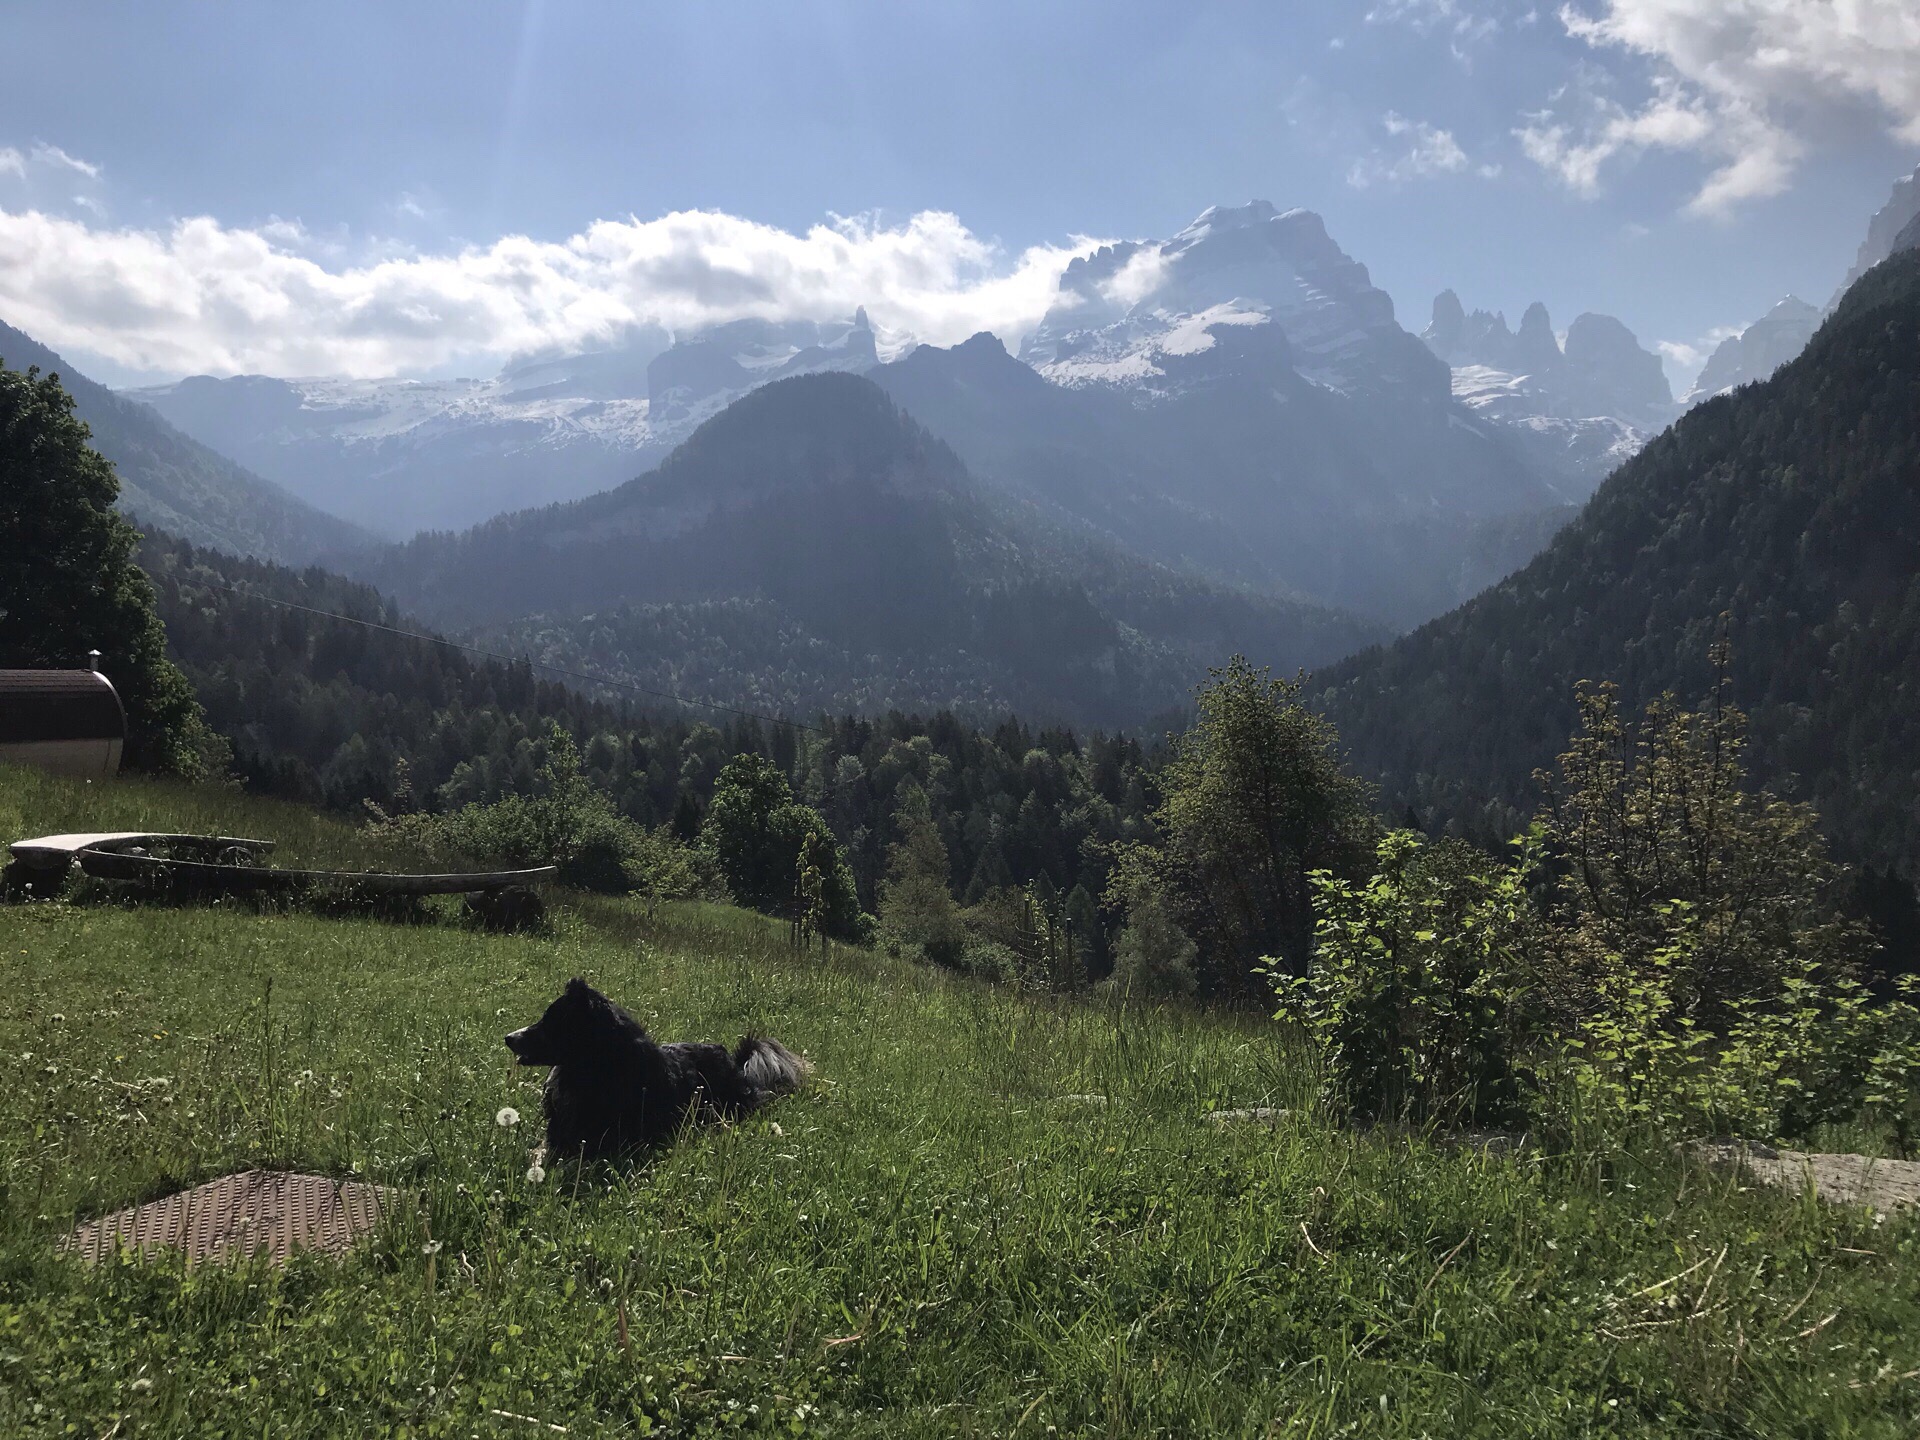 本来是要来攀岩的 结果六月初 Dolomite上还是白雪皑皑 只能改成骑马 和钓鱼了